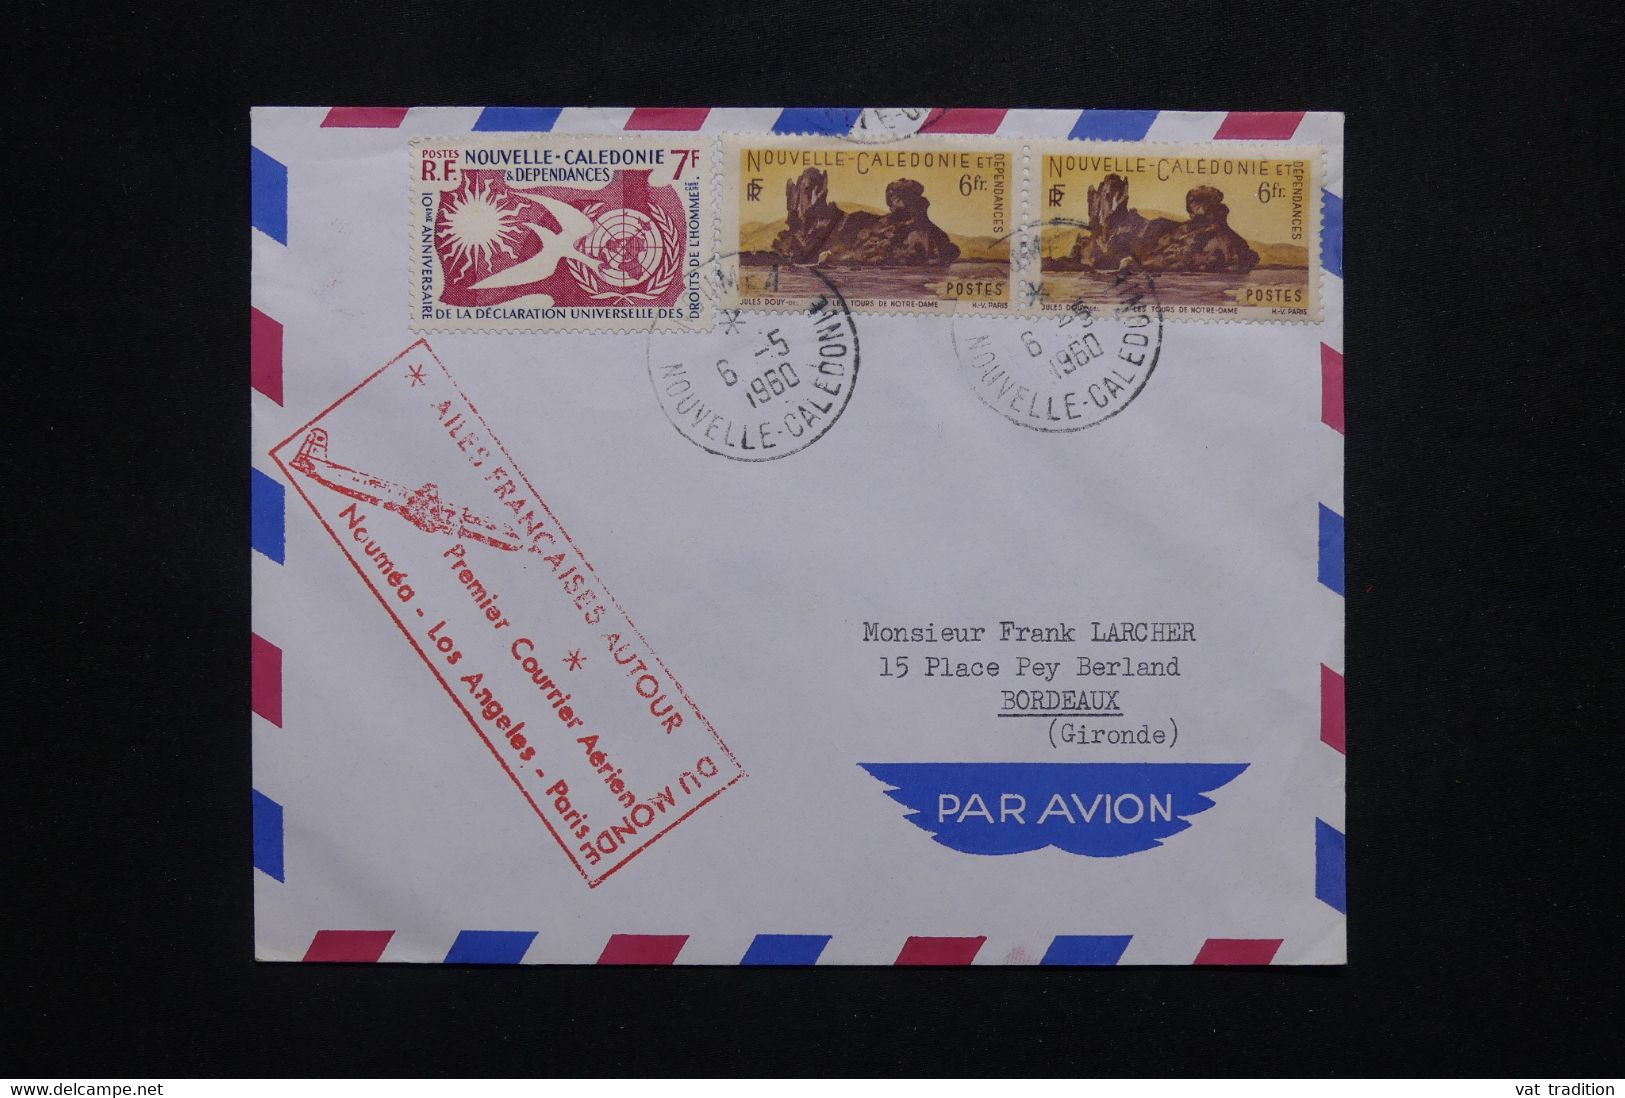 NOUVELLE CALÉDONIE - Enveloppe De Nouméa Pour La France En 1960 Avec Cachet Commémoratif Aérien - L 102689 - Covers & Documents